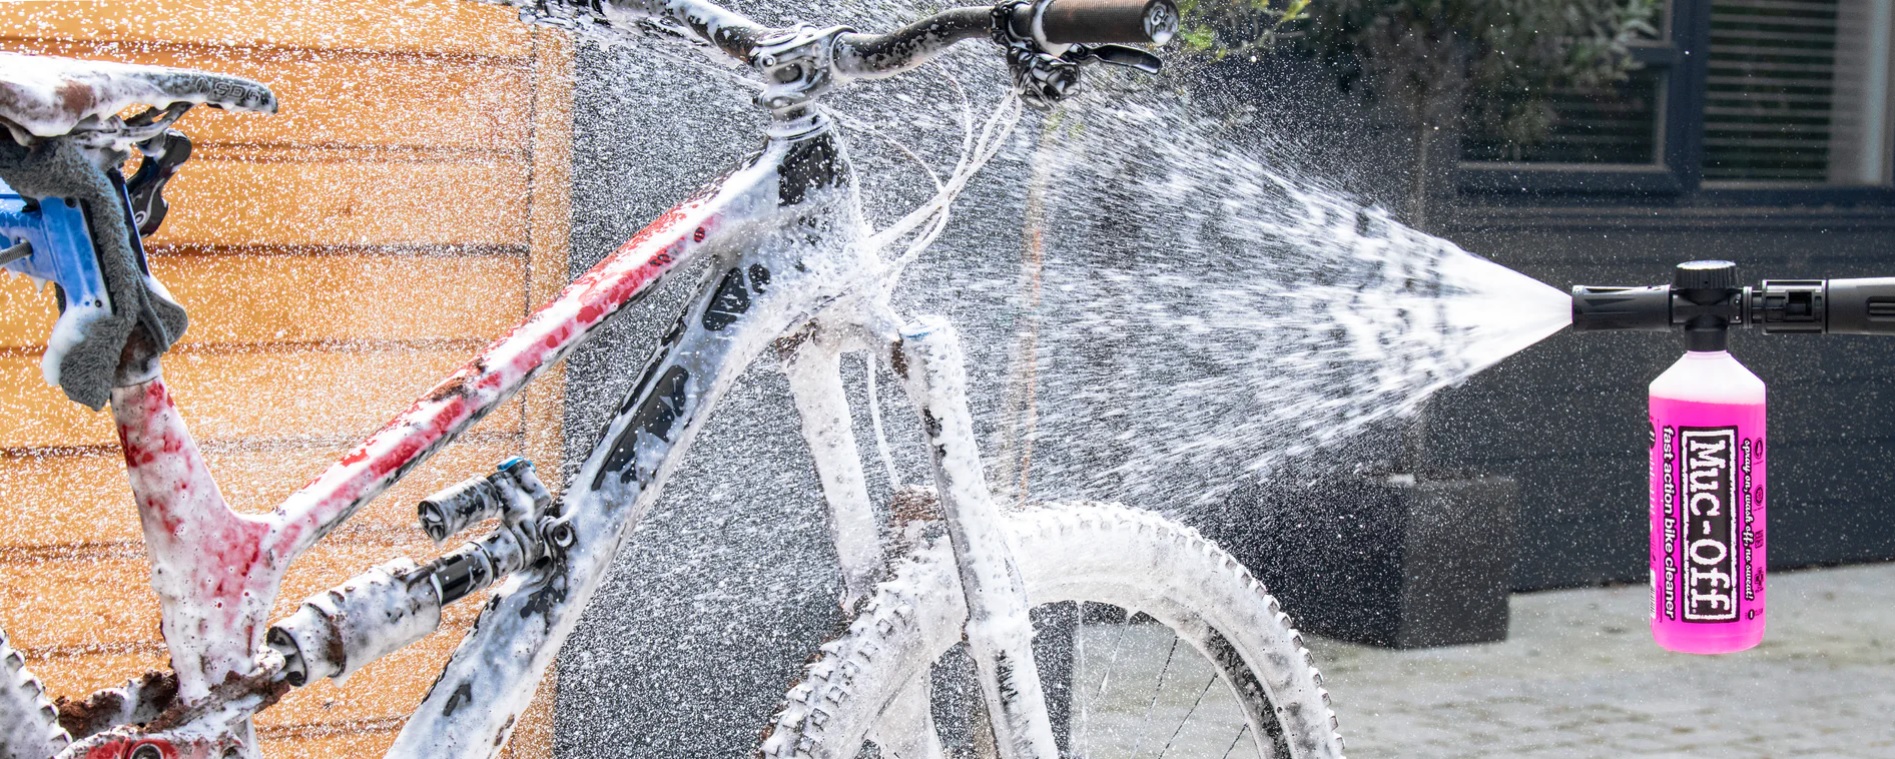 mycie roweru